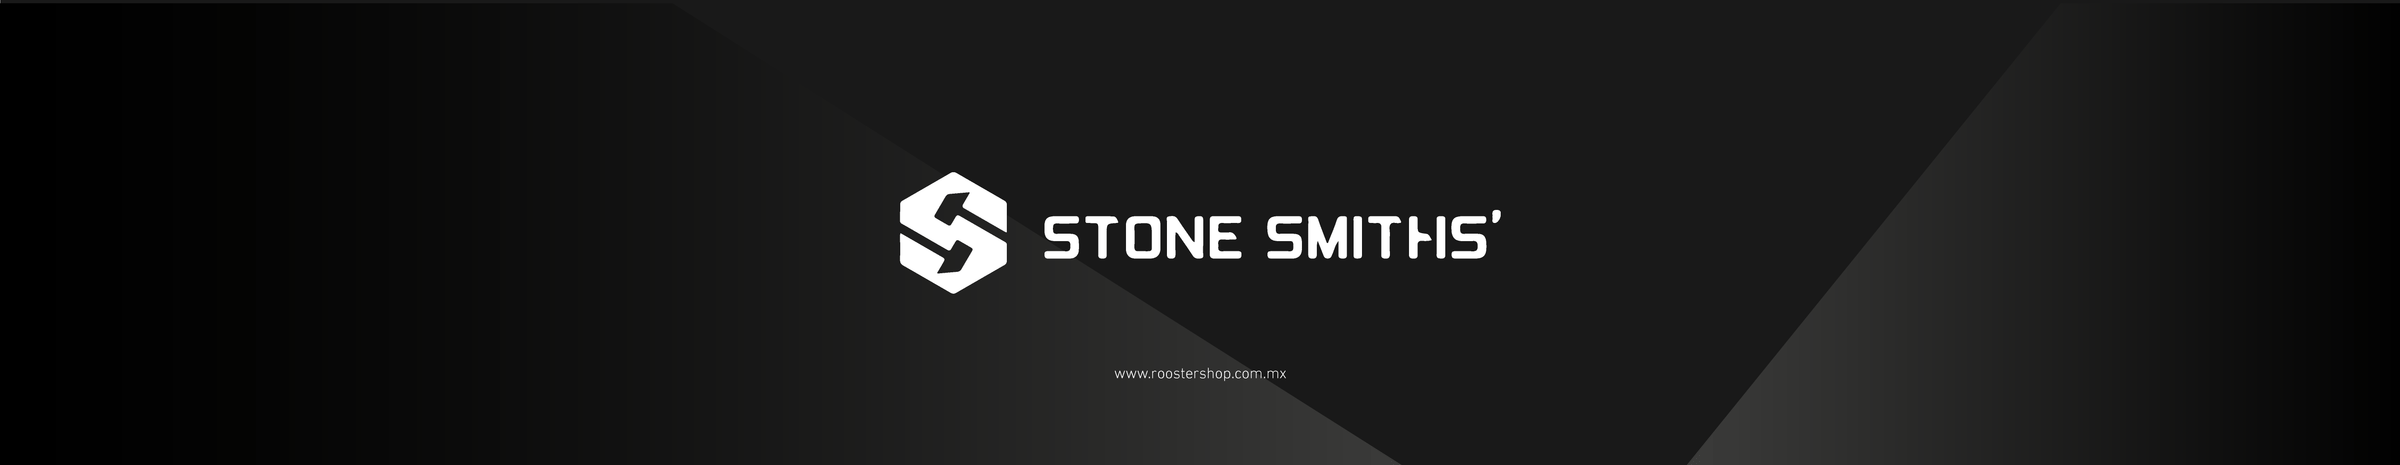 Stone Smiths Mexico